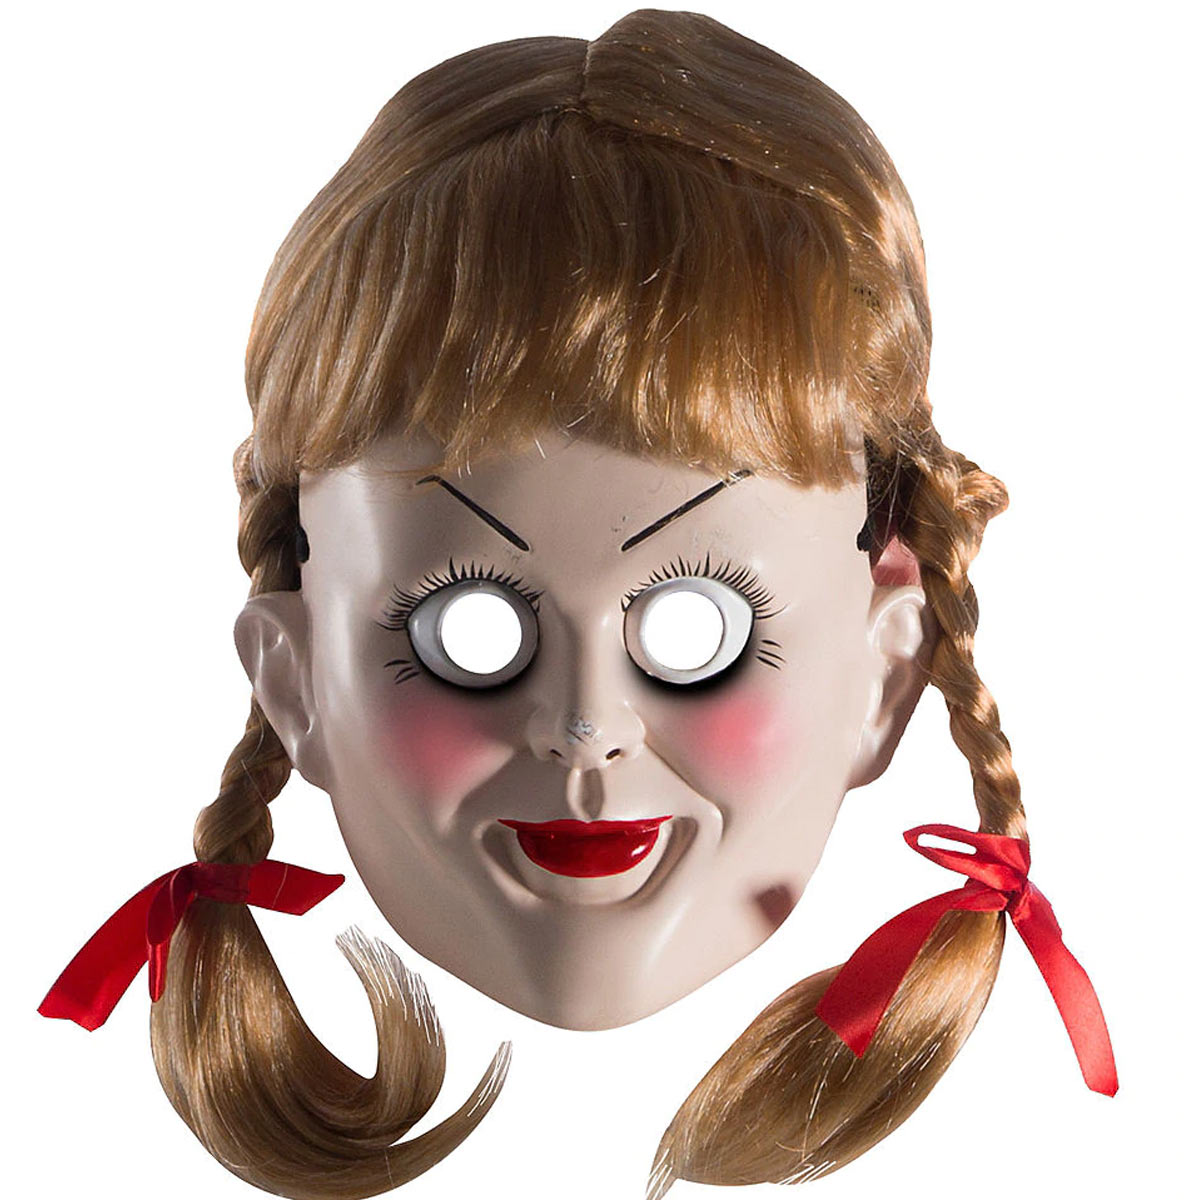 送料無料 アナベル 死霊博物館 死霊館の人形 大人用 ウィッグ マスク 変身用 コスチューム コスプレ 変装 Annabelle